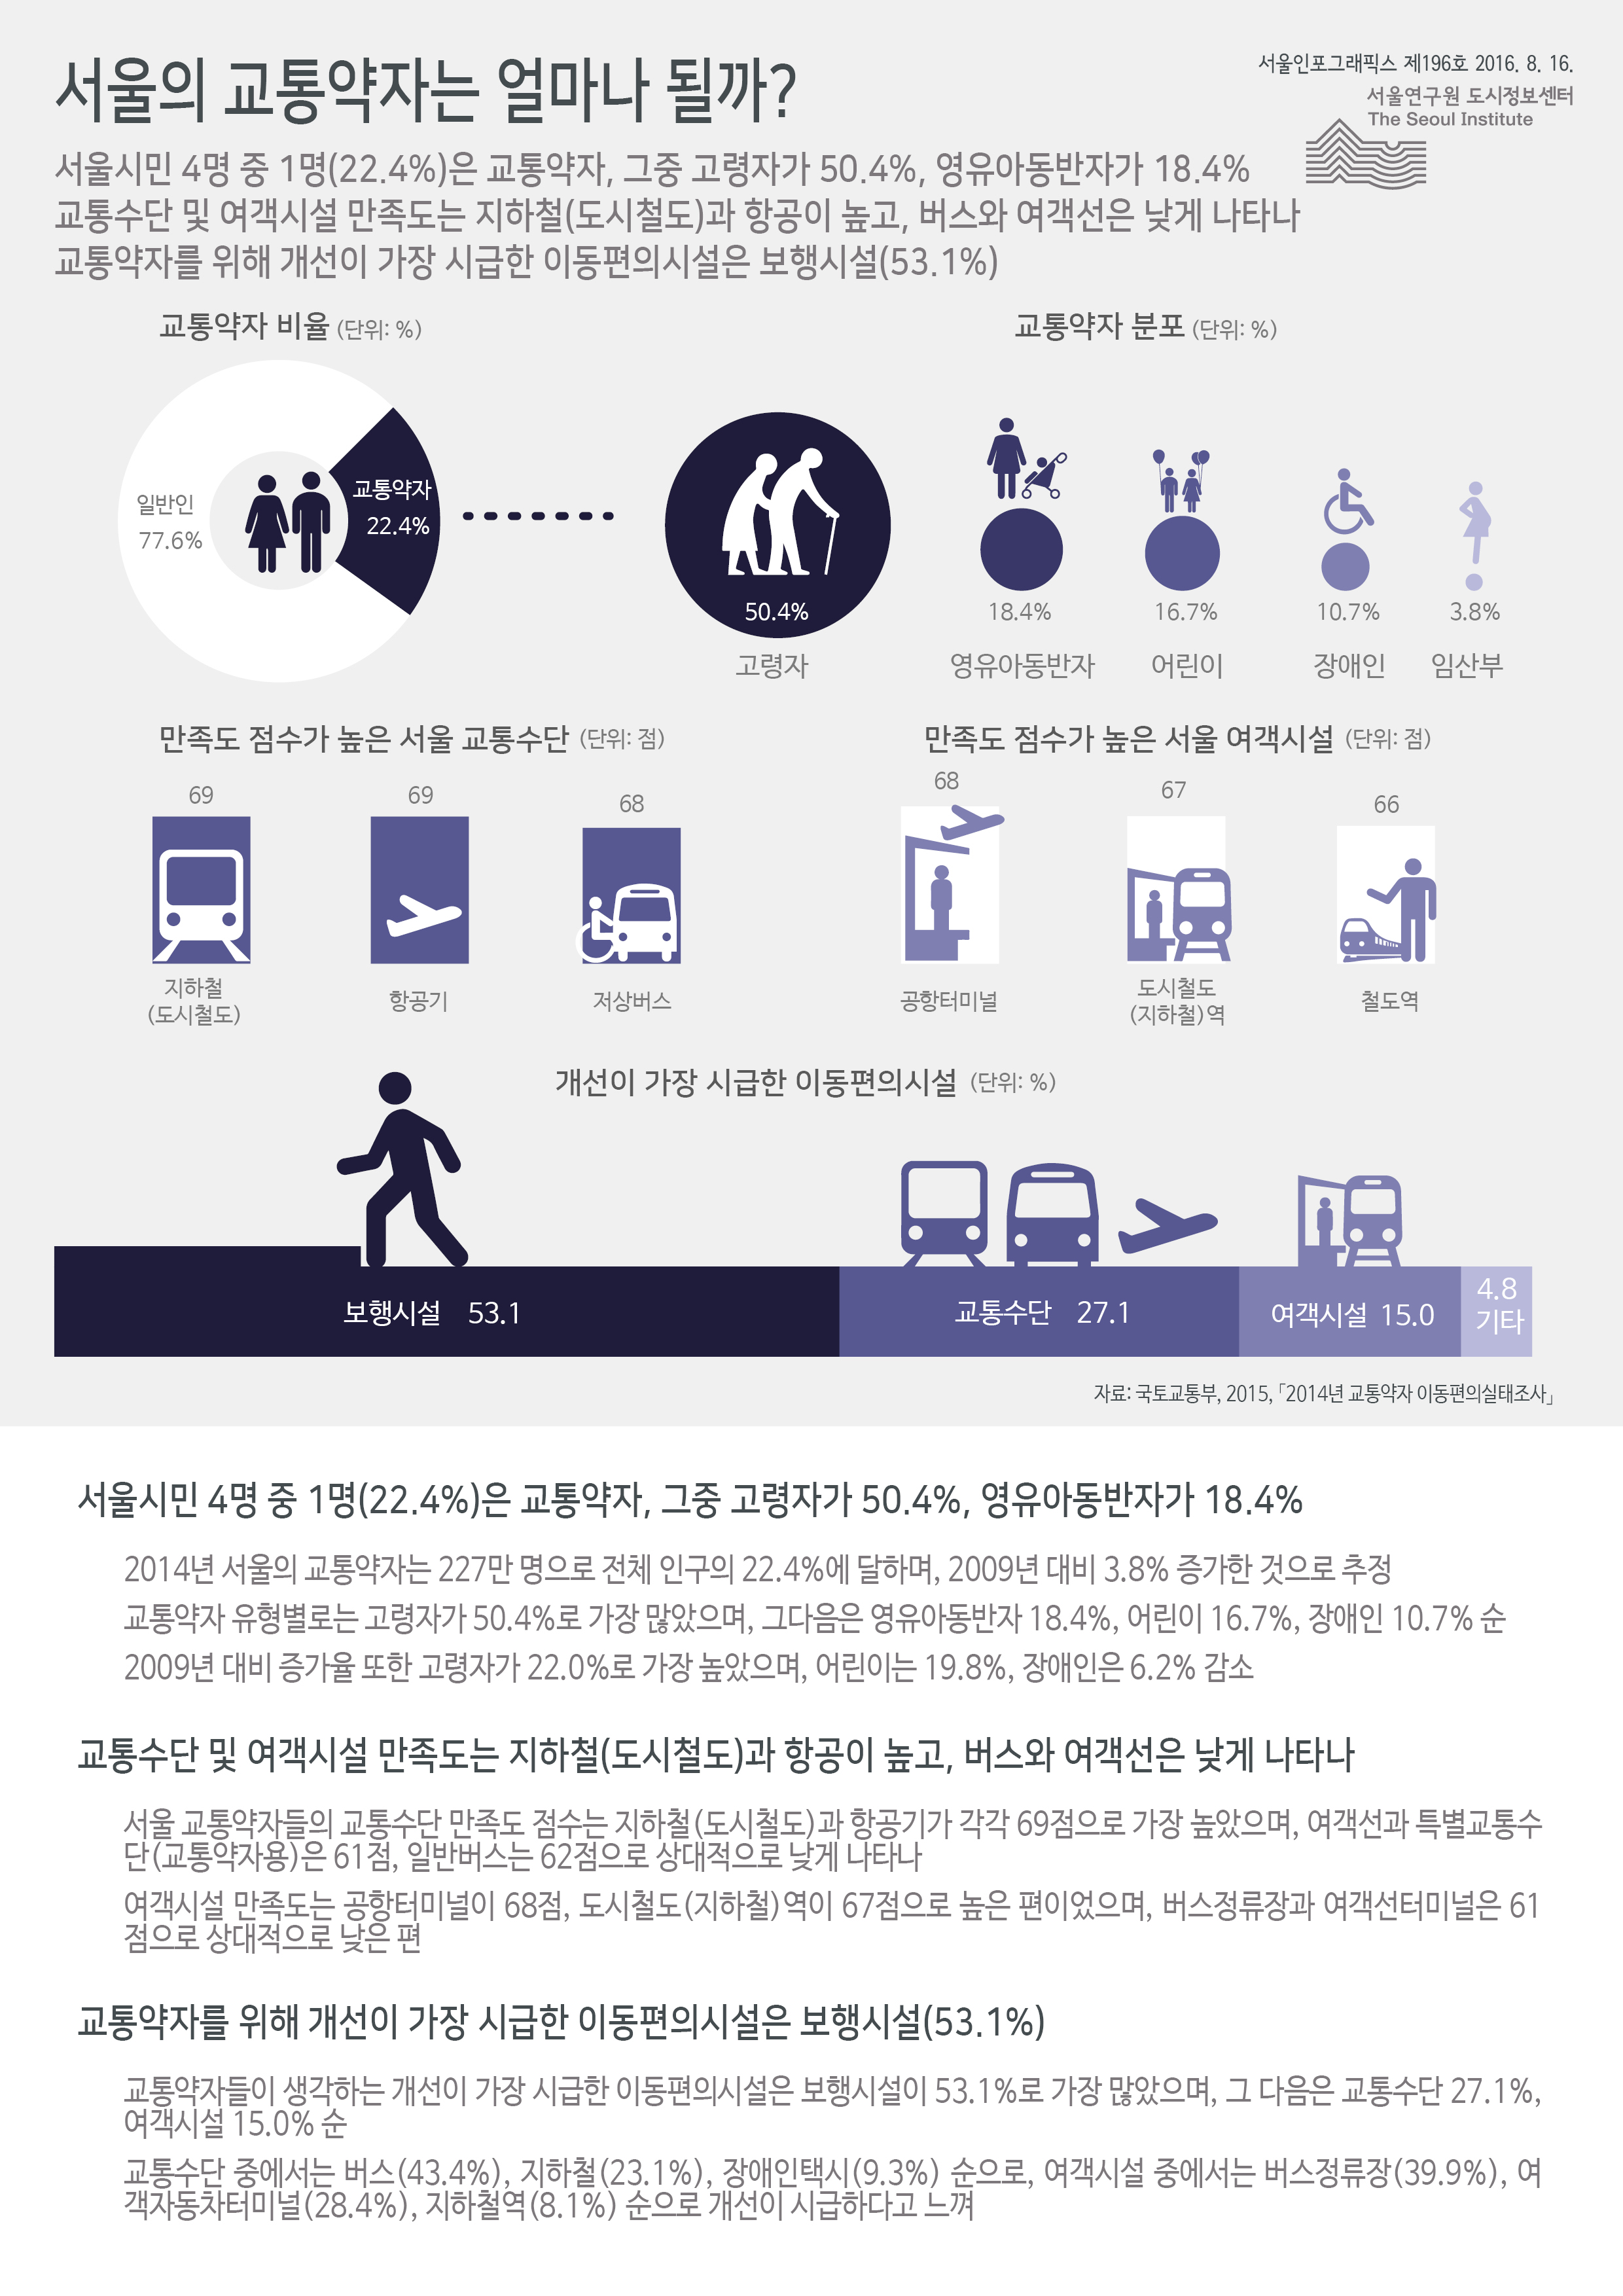 서울의 교통약자는 얼마나 될까? 서울인포그래픽스 제196호 2016년 8월 16일 서울시민 4명 중 1명(22.4%)은 교통약자, 그중 고령자가 50.4%, 영유아동반자가 18.4%. 교통수단 및 여객시설 만족도는 지하철(도시철도)과 항공이 높고, 버스와 여객선은 낮게 나타남. 교통약자를 위해 개선이 가장 시급한 이동편의시설은 보행시설(53.1%)로 정리 될 수 있습니다. 인포그래픽으로 제공되는 그래픽은 하단에 표로 자세히 제공됩니다.